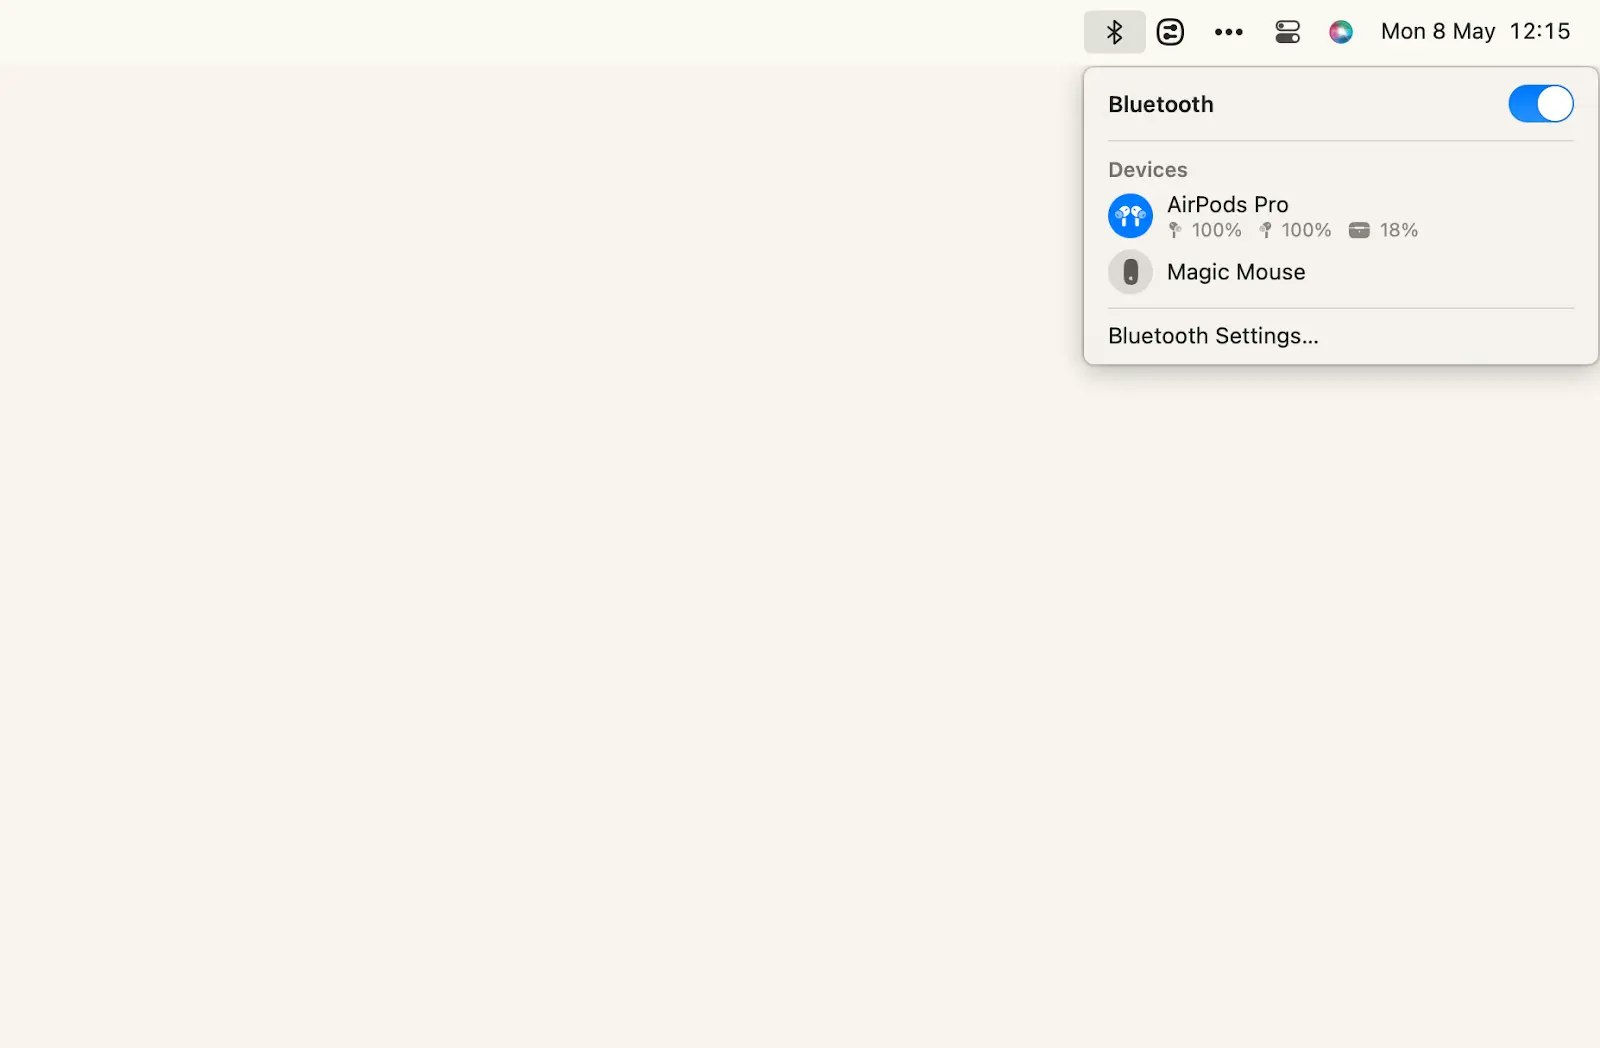 Mit der Bluetooth-Option von macOS können Sie den Akkuladestand Ihrer AirPods anzeigen